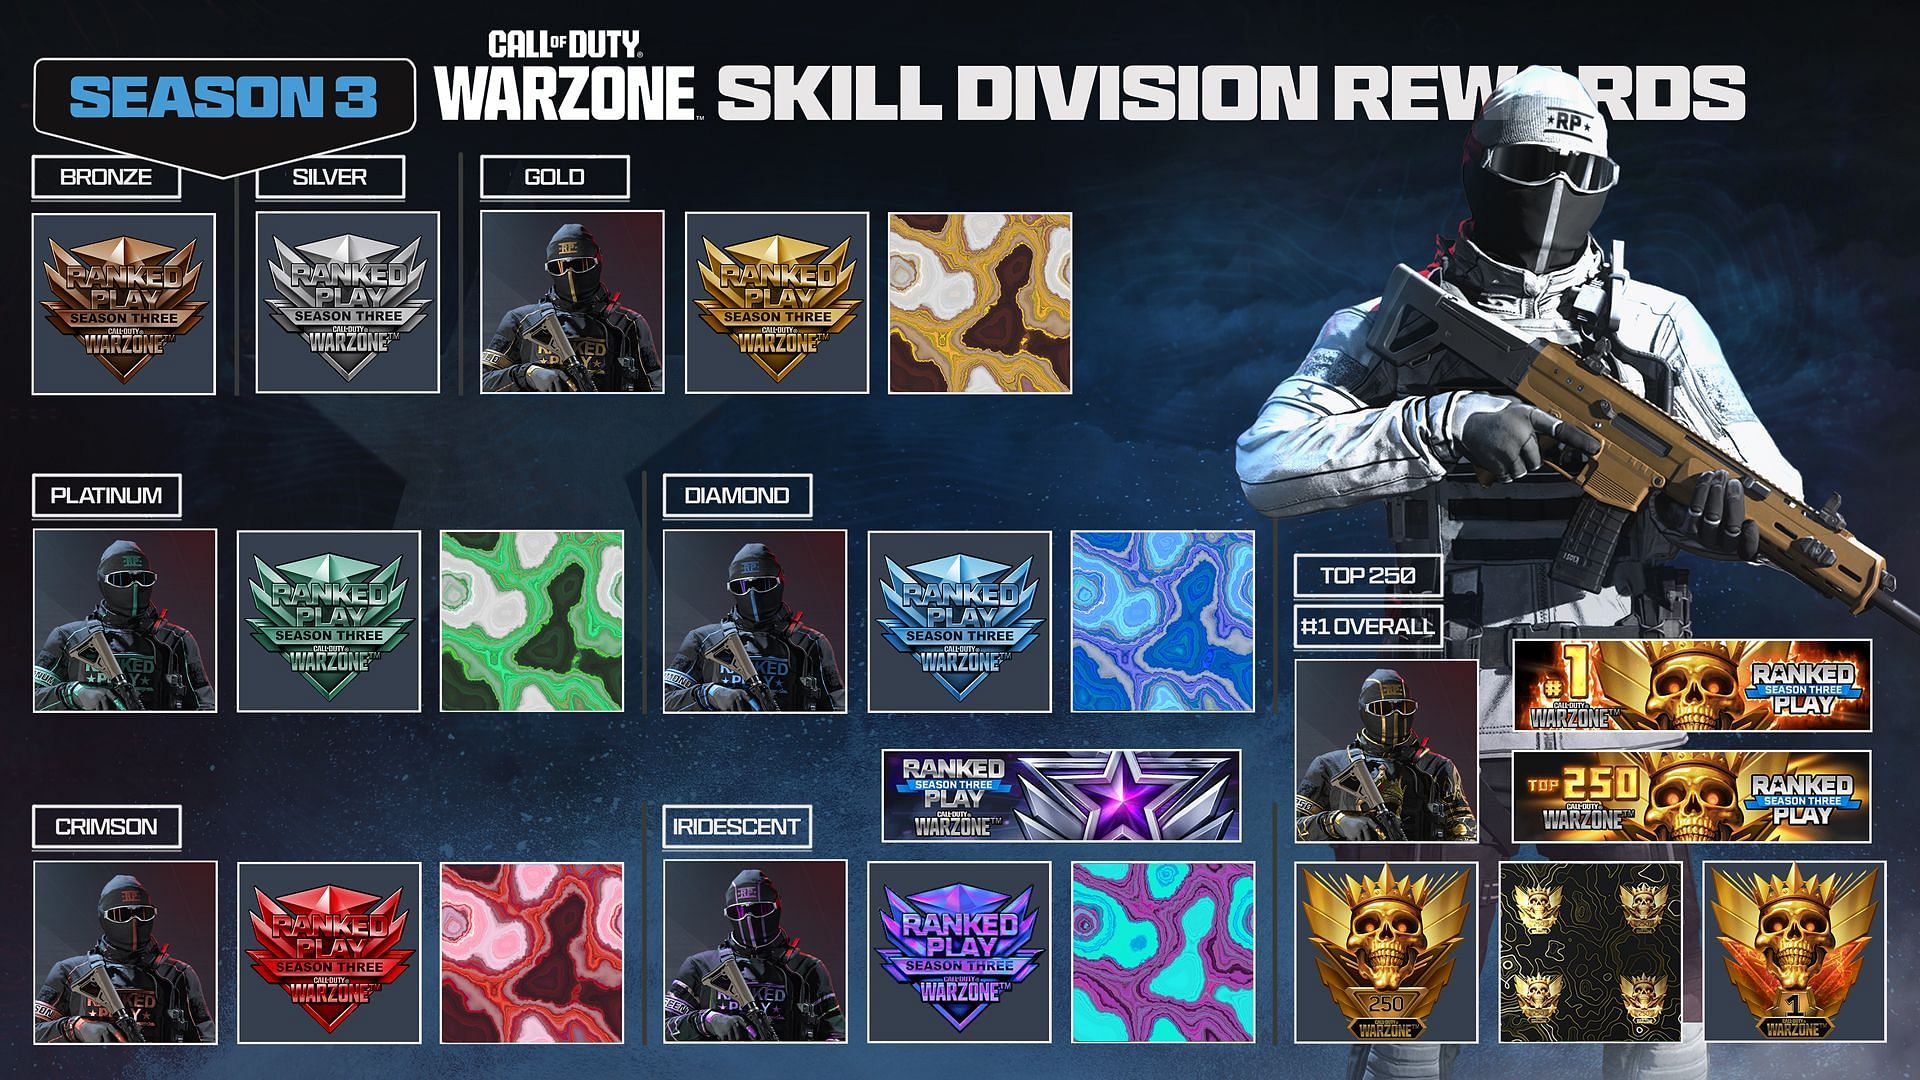 All Warzone Ranked Resurgence Season 3 Skill Division Rewards (Image via Activision)